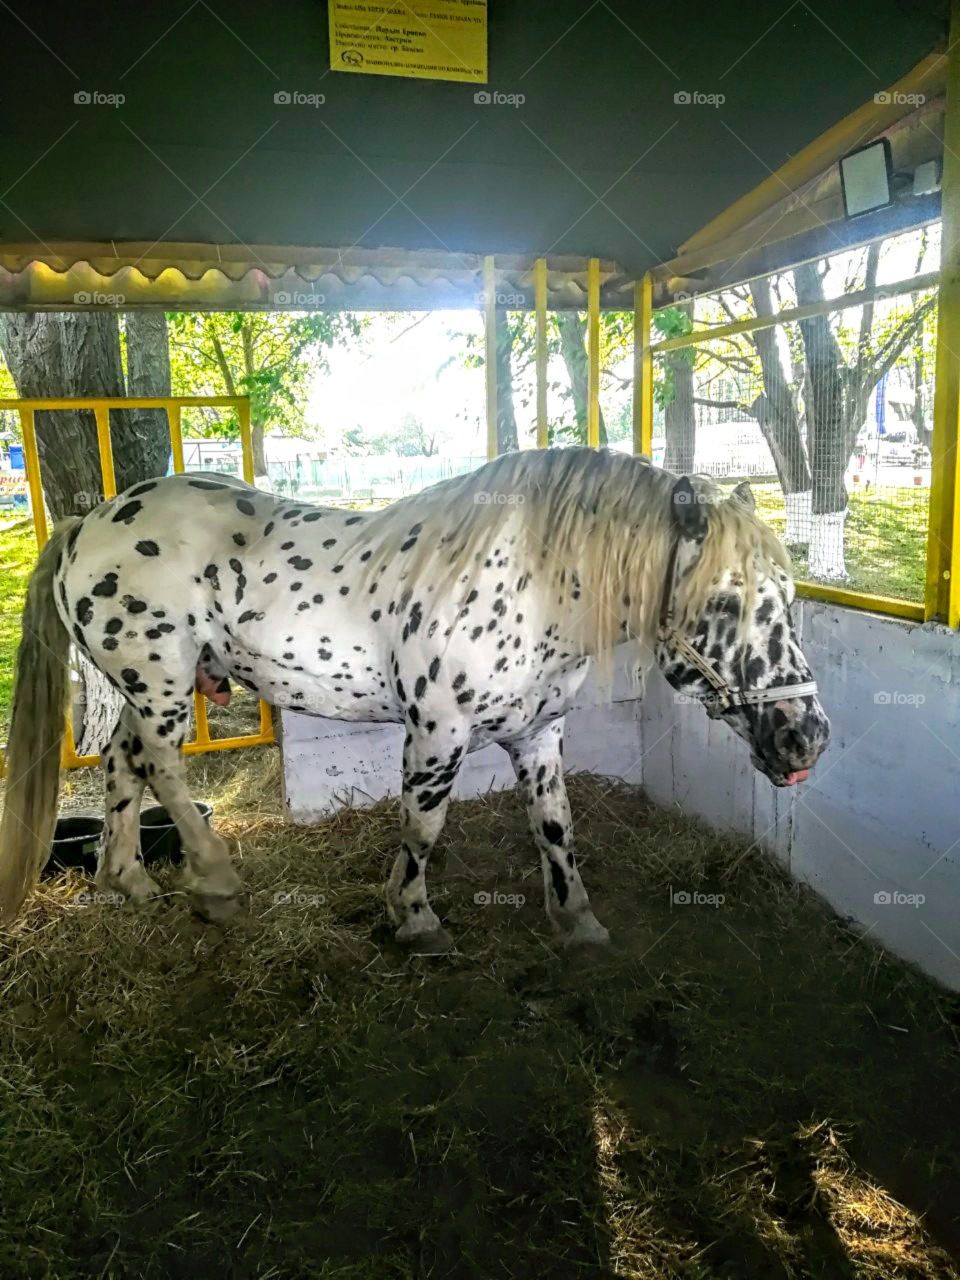 a Dalmatian horse